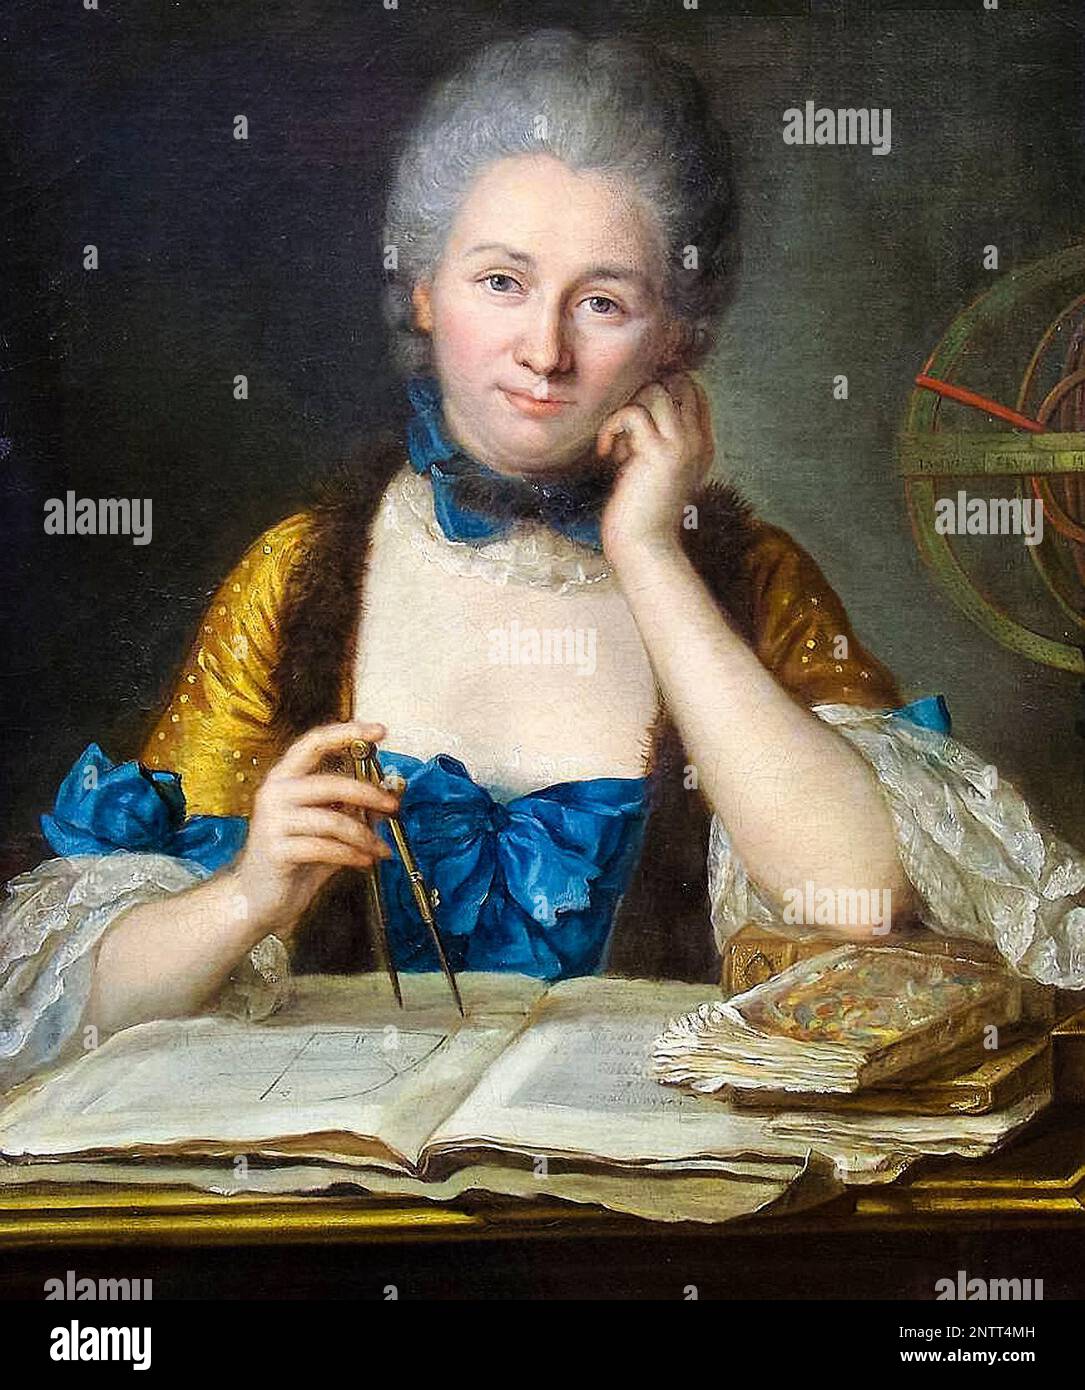 Émilie du Châtelet (1706-1749), philosophe et mathématicien français, portrait peint à l'huile sur toile par Maurice Quentin de la Tour, avant 1749 Banque D'Images